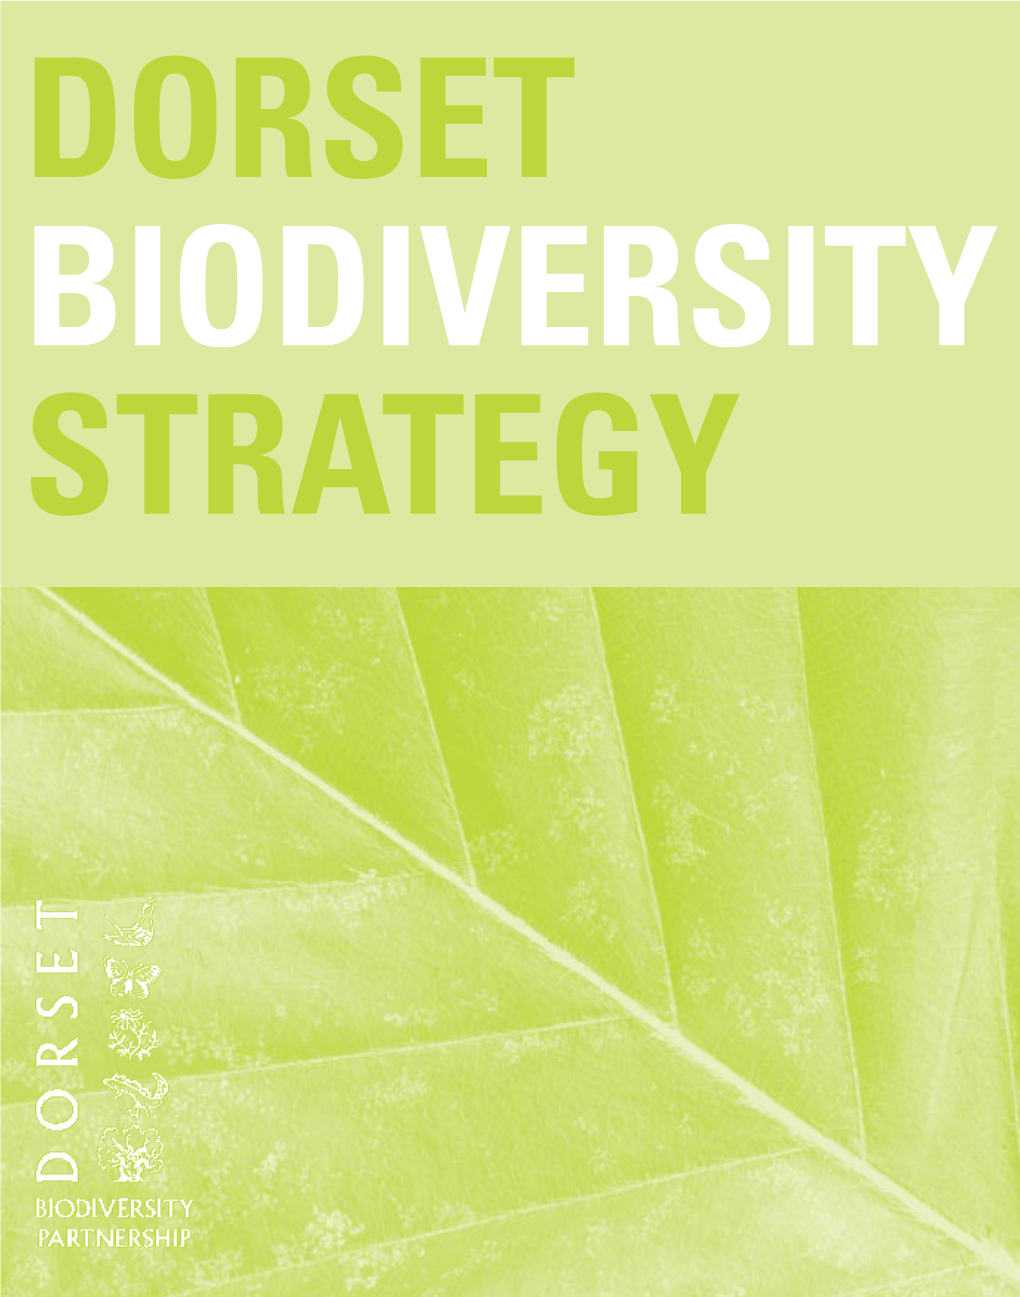 Dorset Biodiversity Strategy 2003